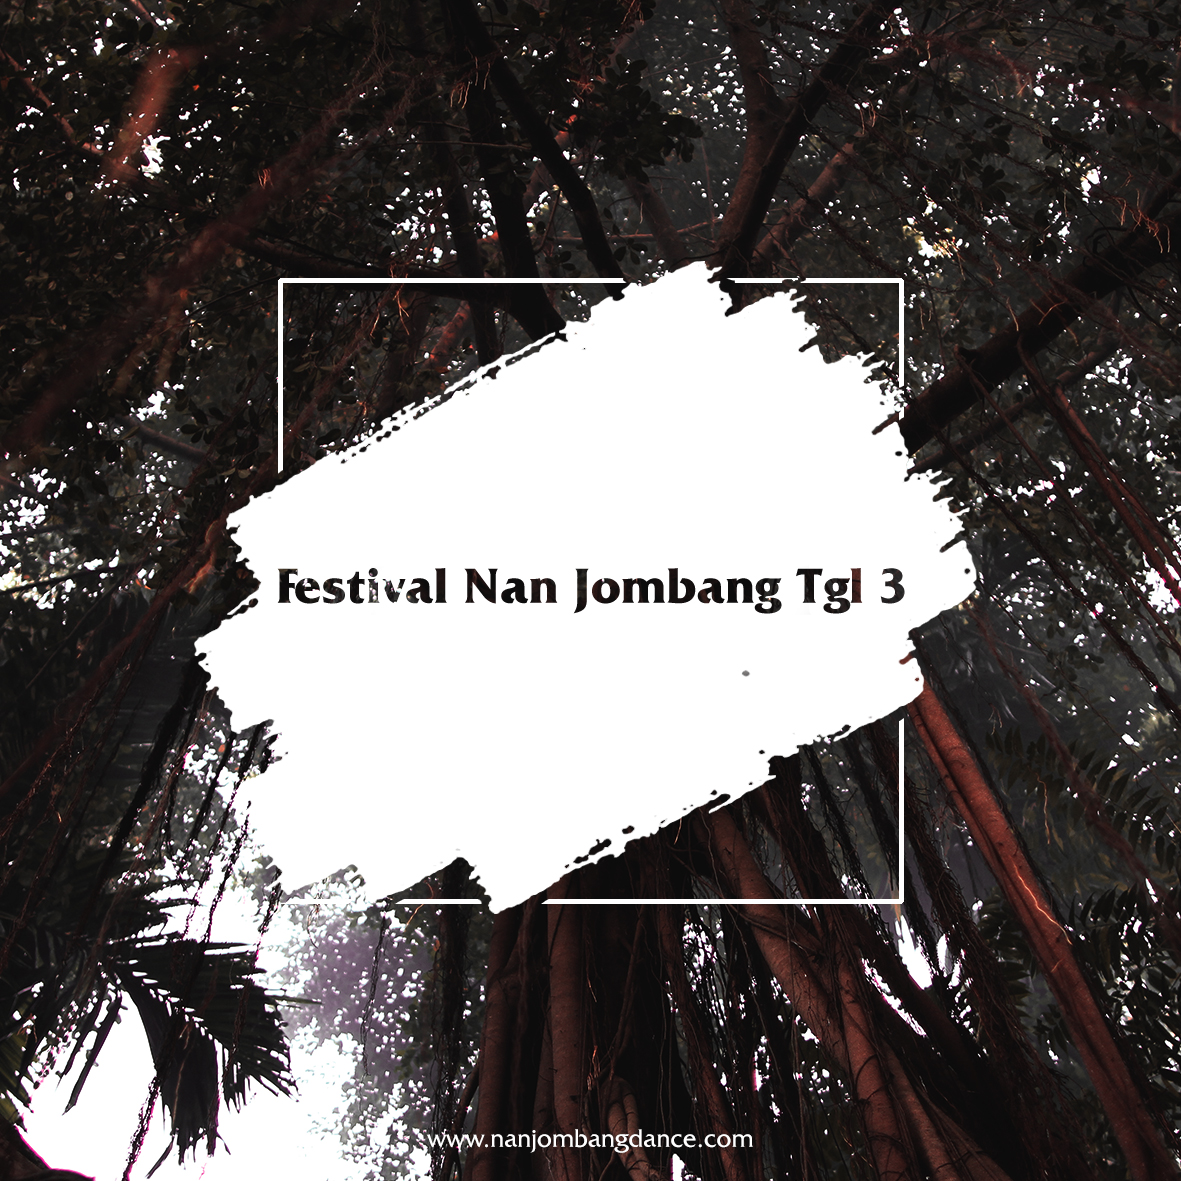 Festival Nan Jombang Tgl 3